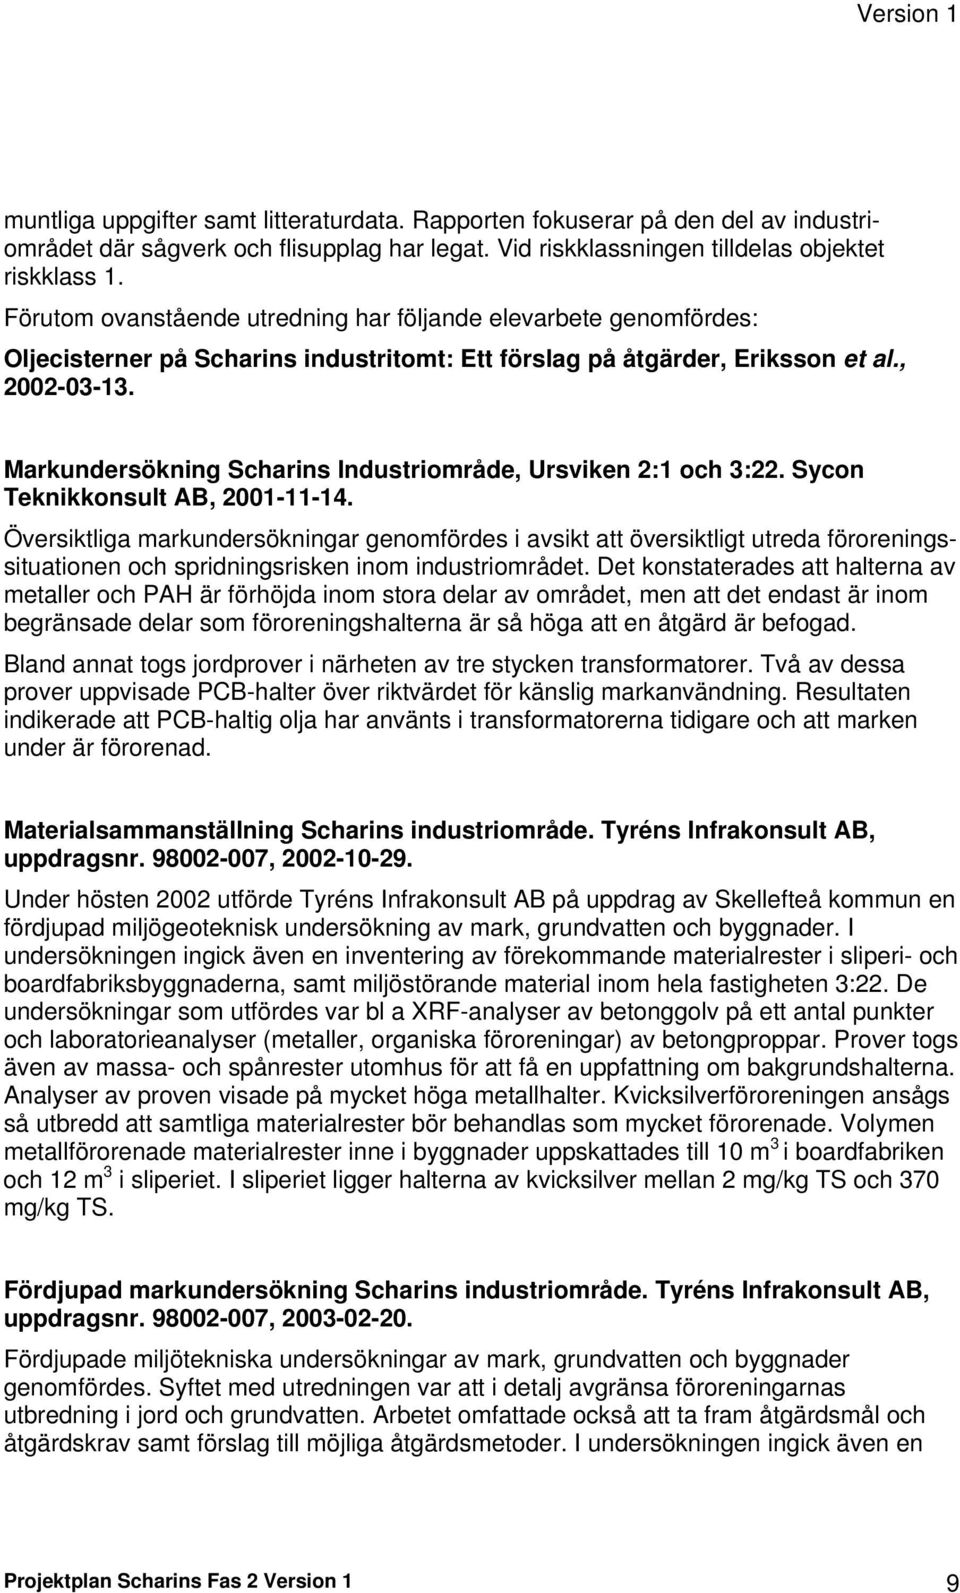 Markundersökning Scharins Industriområde, Ursviken 2:1 och 3:22. Sycon Teknikkonsult AB, 2001-11-14.